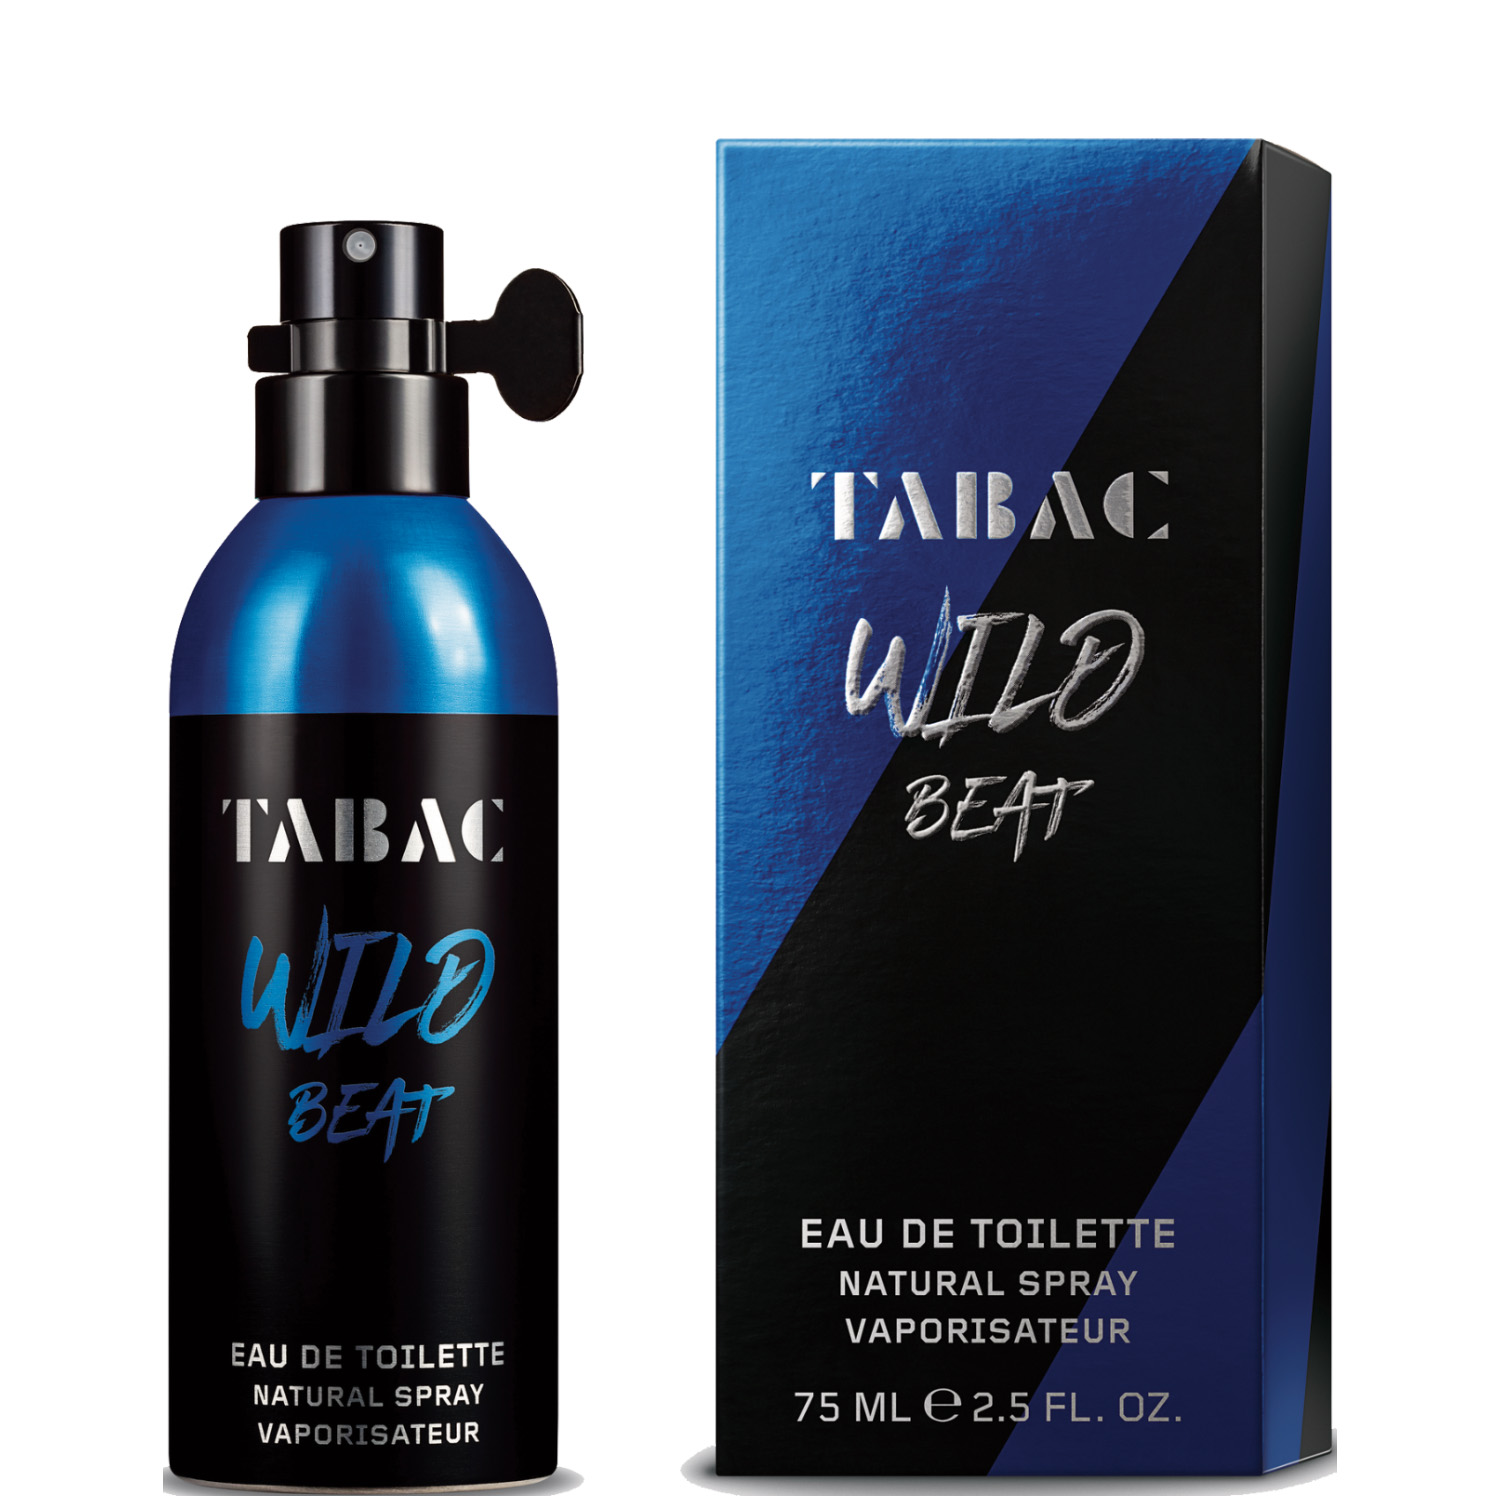 Tabac Wild Beat Eau de Toilette 75ml